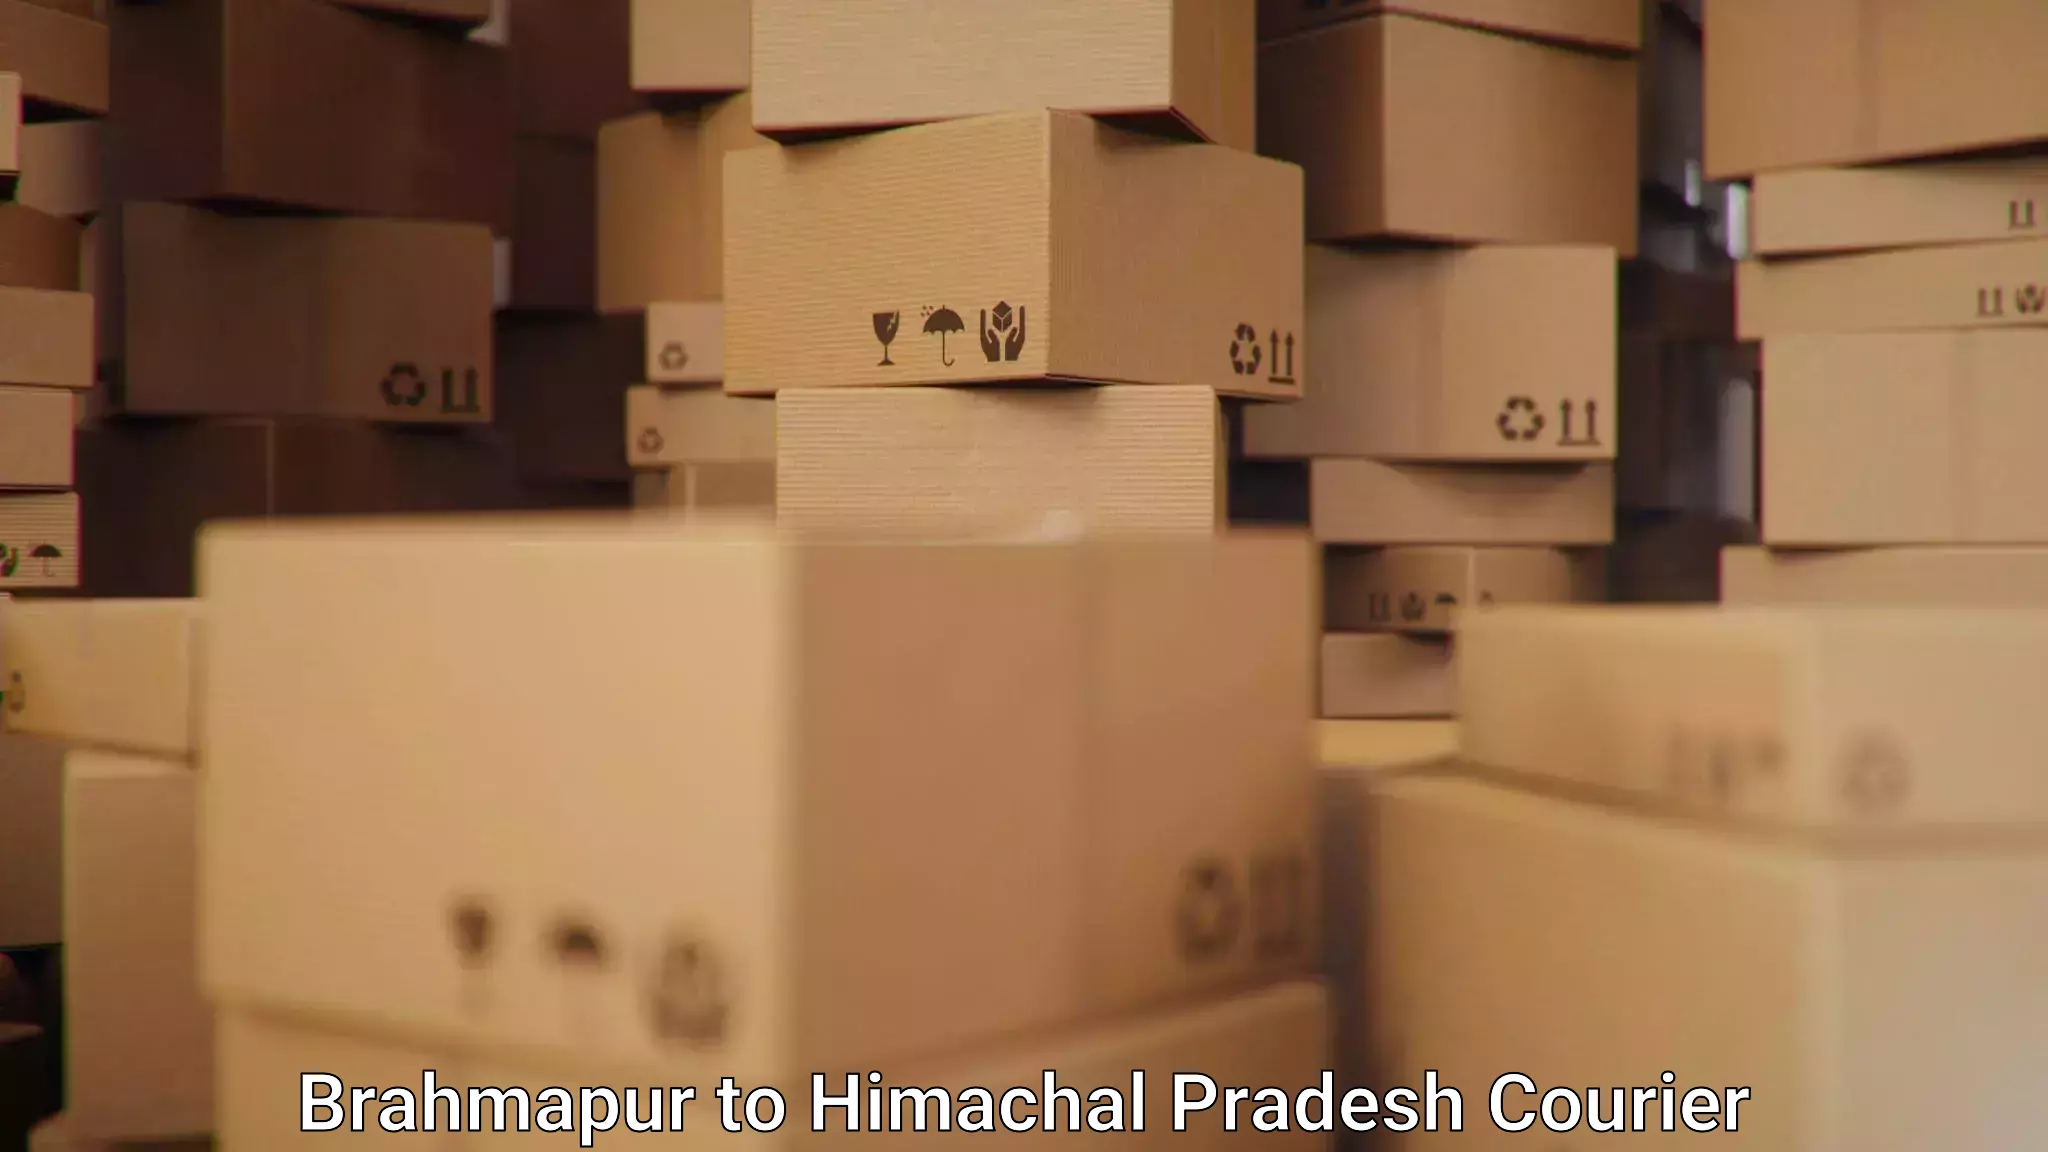 Efficient parcel service Brahmapur to Jari